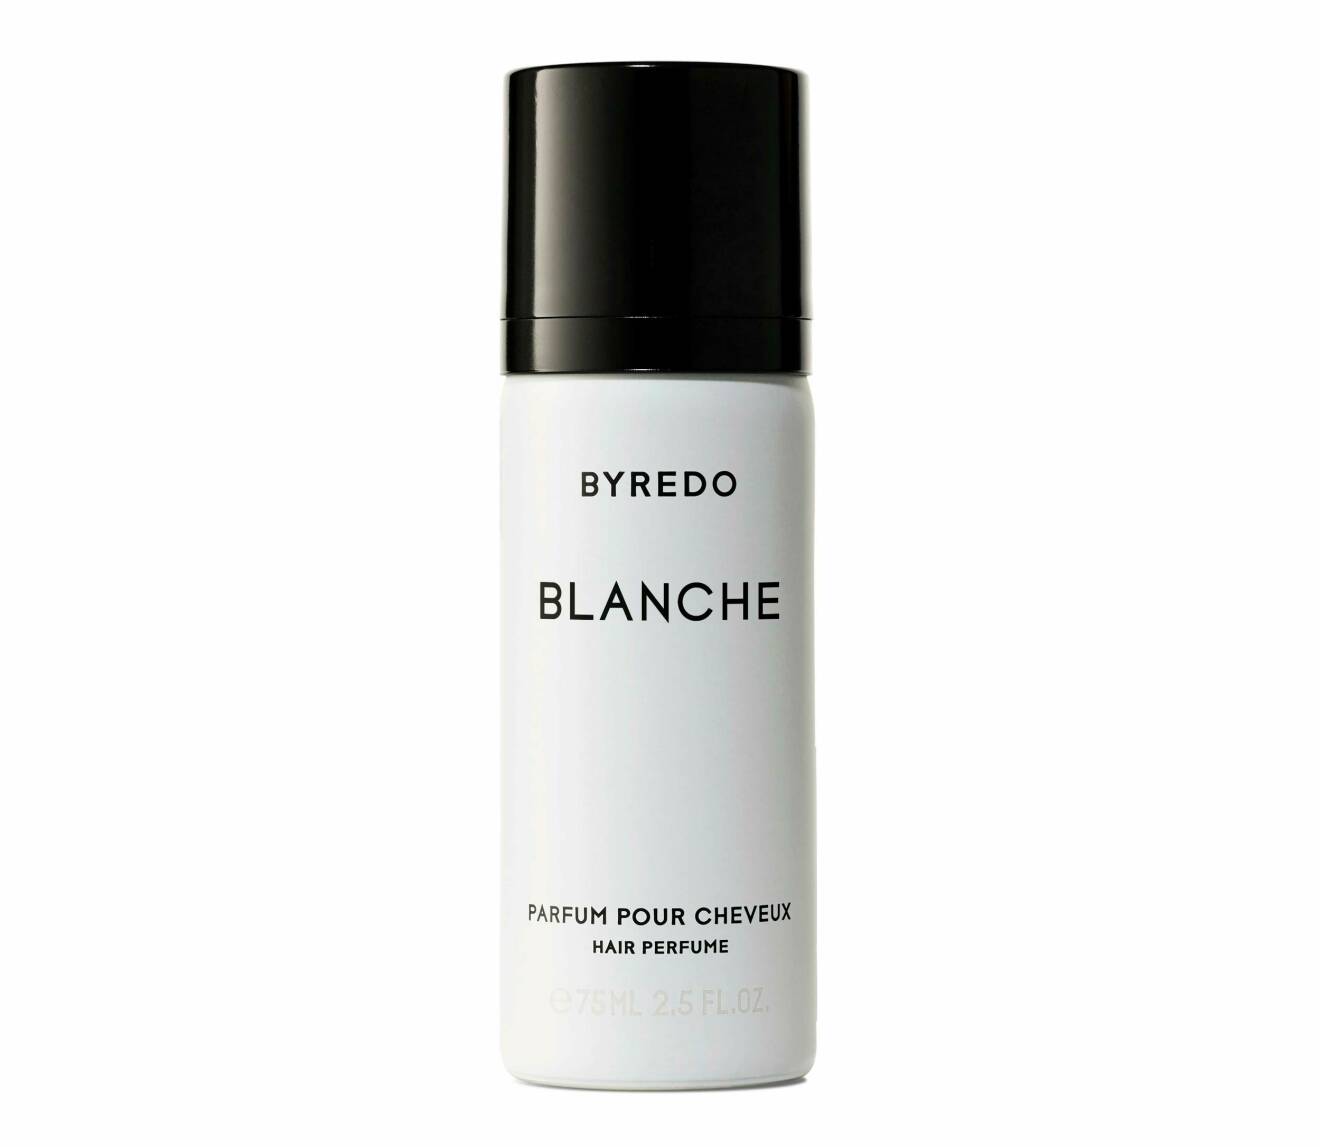 Blanche Parfum pour Cheveux från Byredo.